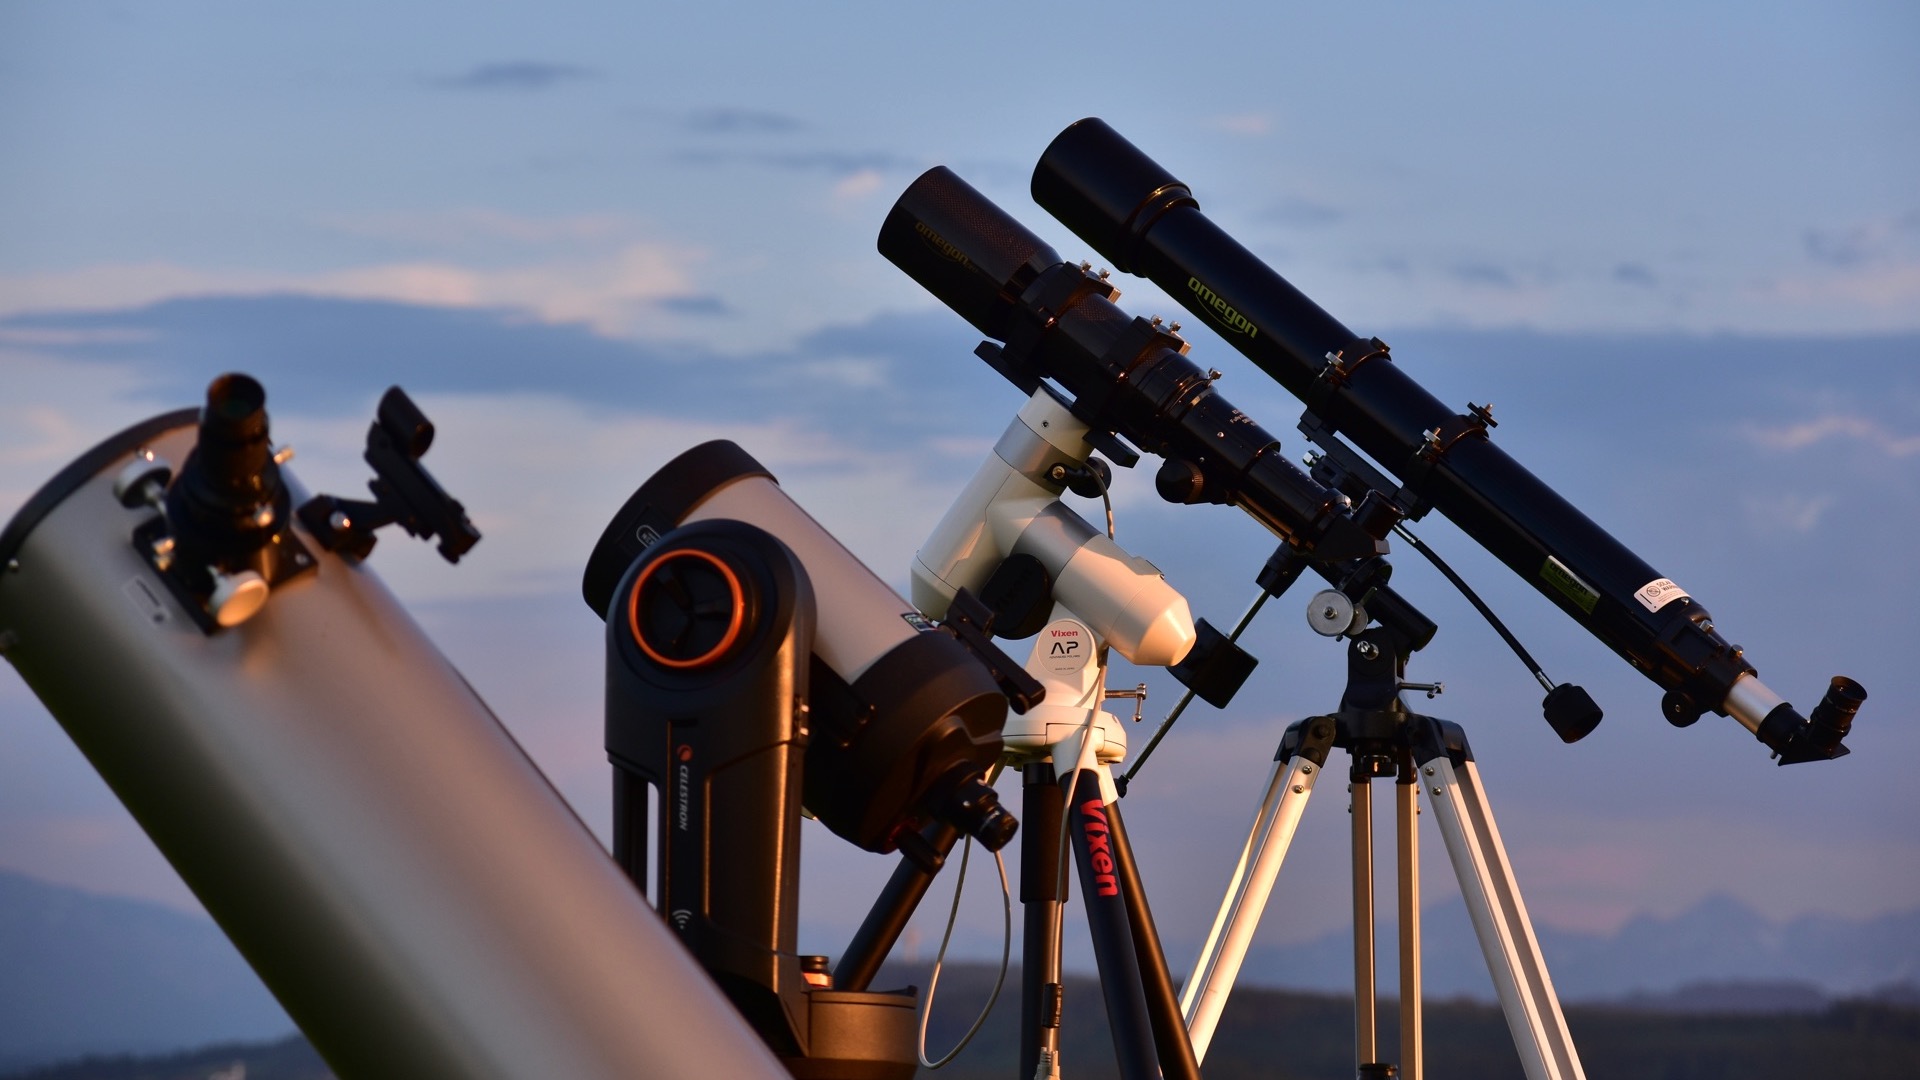 Astronomie-Einsteiger stehen vor einer verwirrenden Auswahl an Teleskopen. Experten bringen da schnell Licht ins Dunkel.